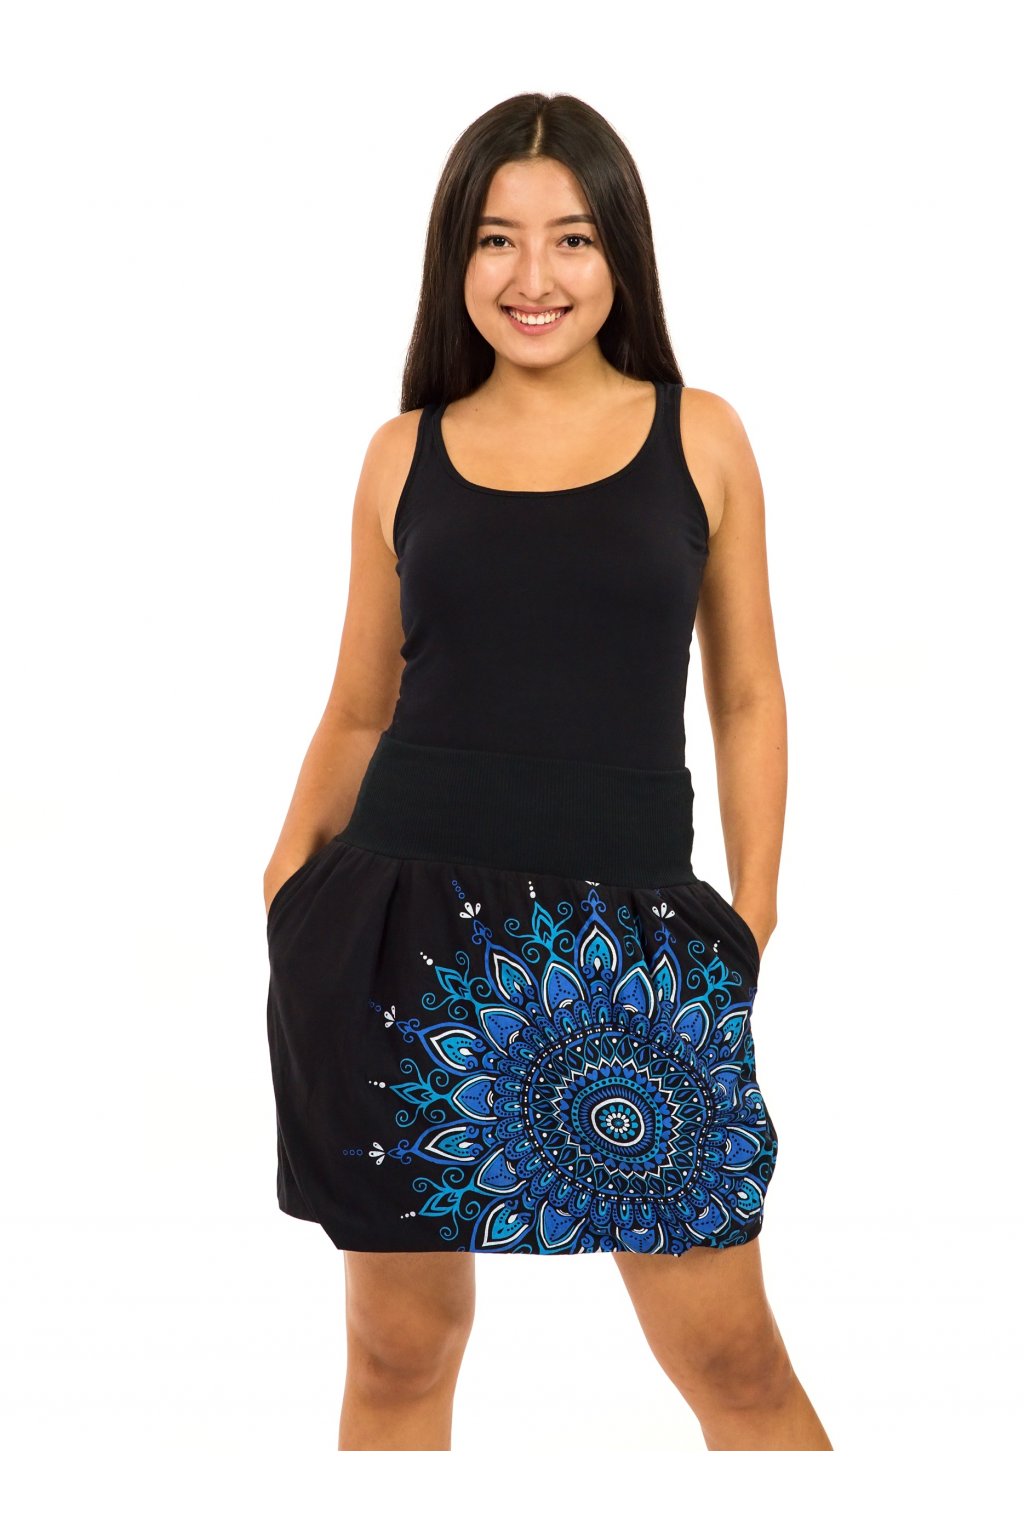 Balonová sukně Mokulea - černá s modrou